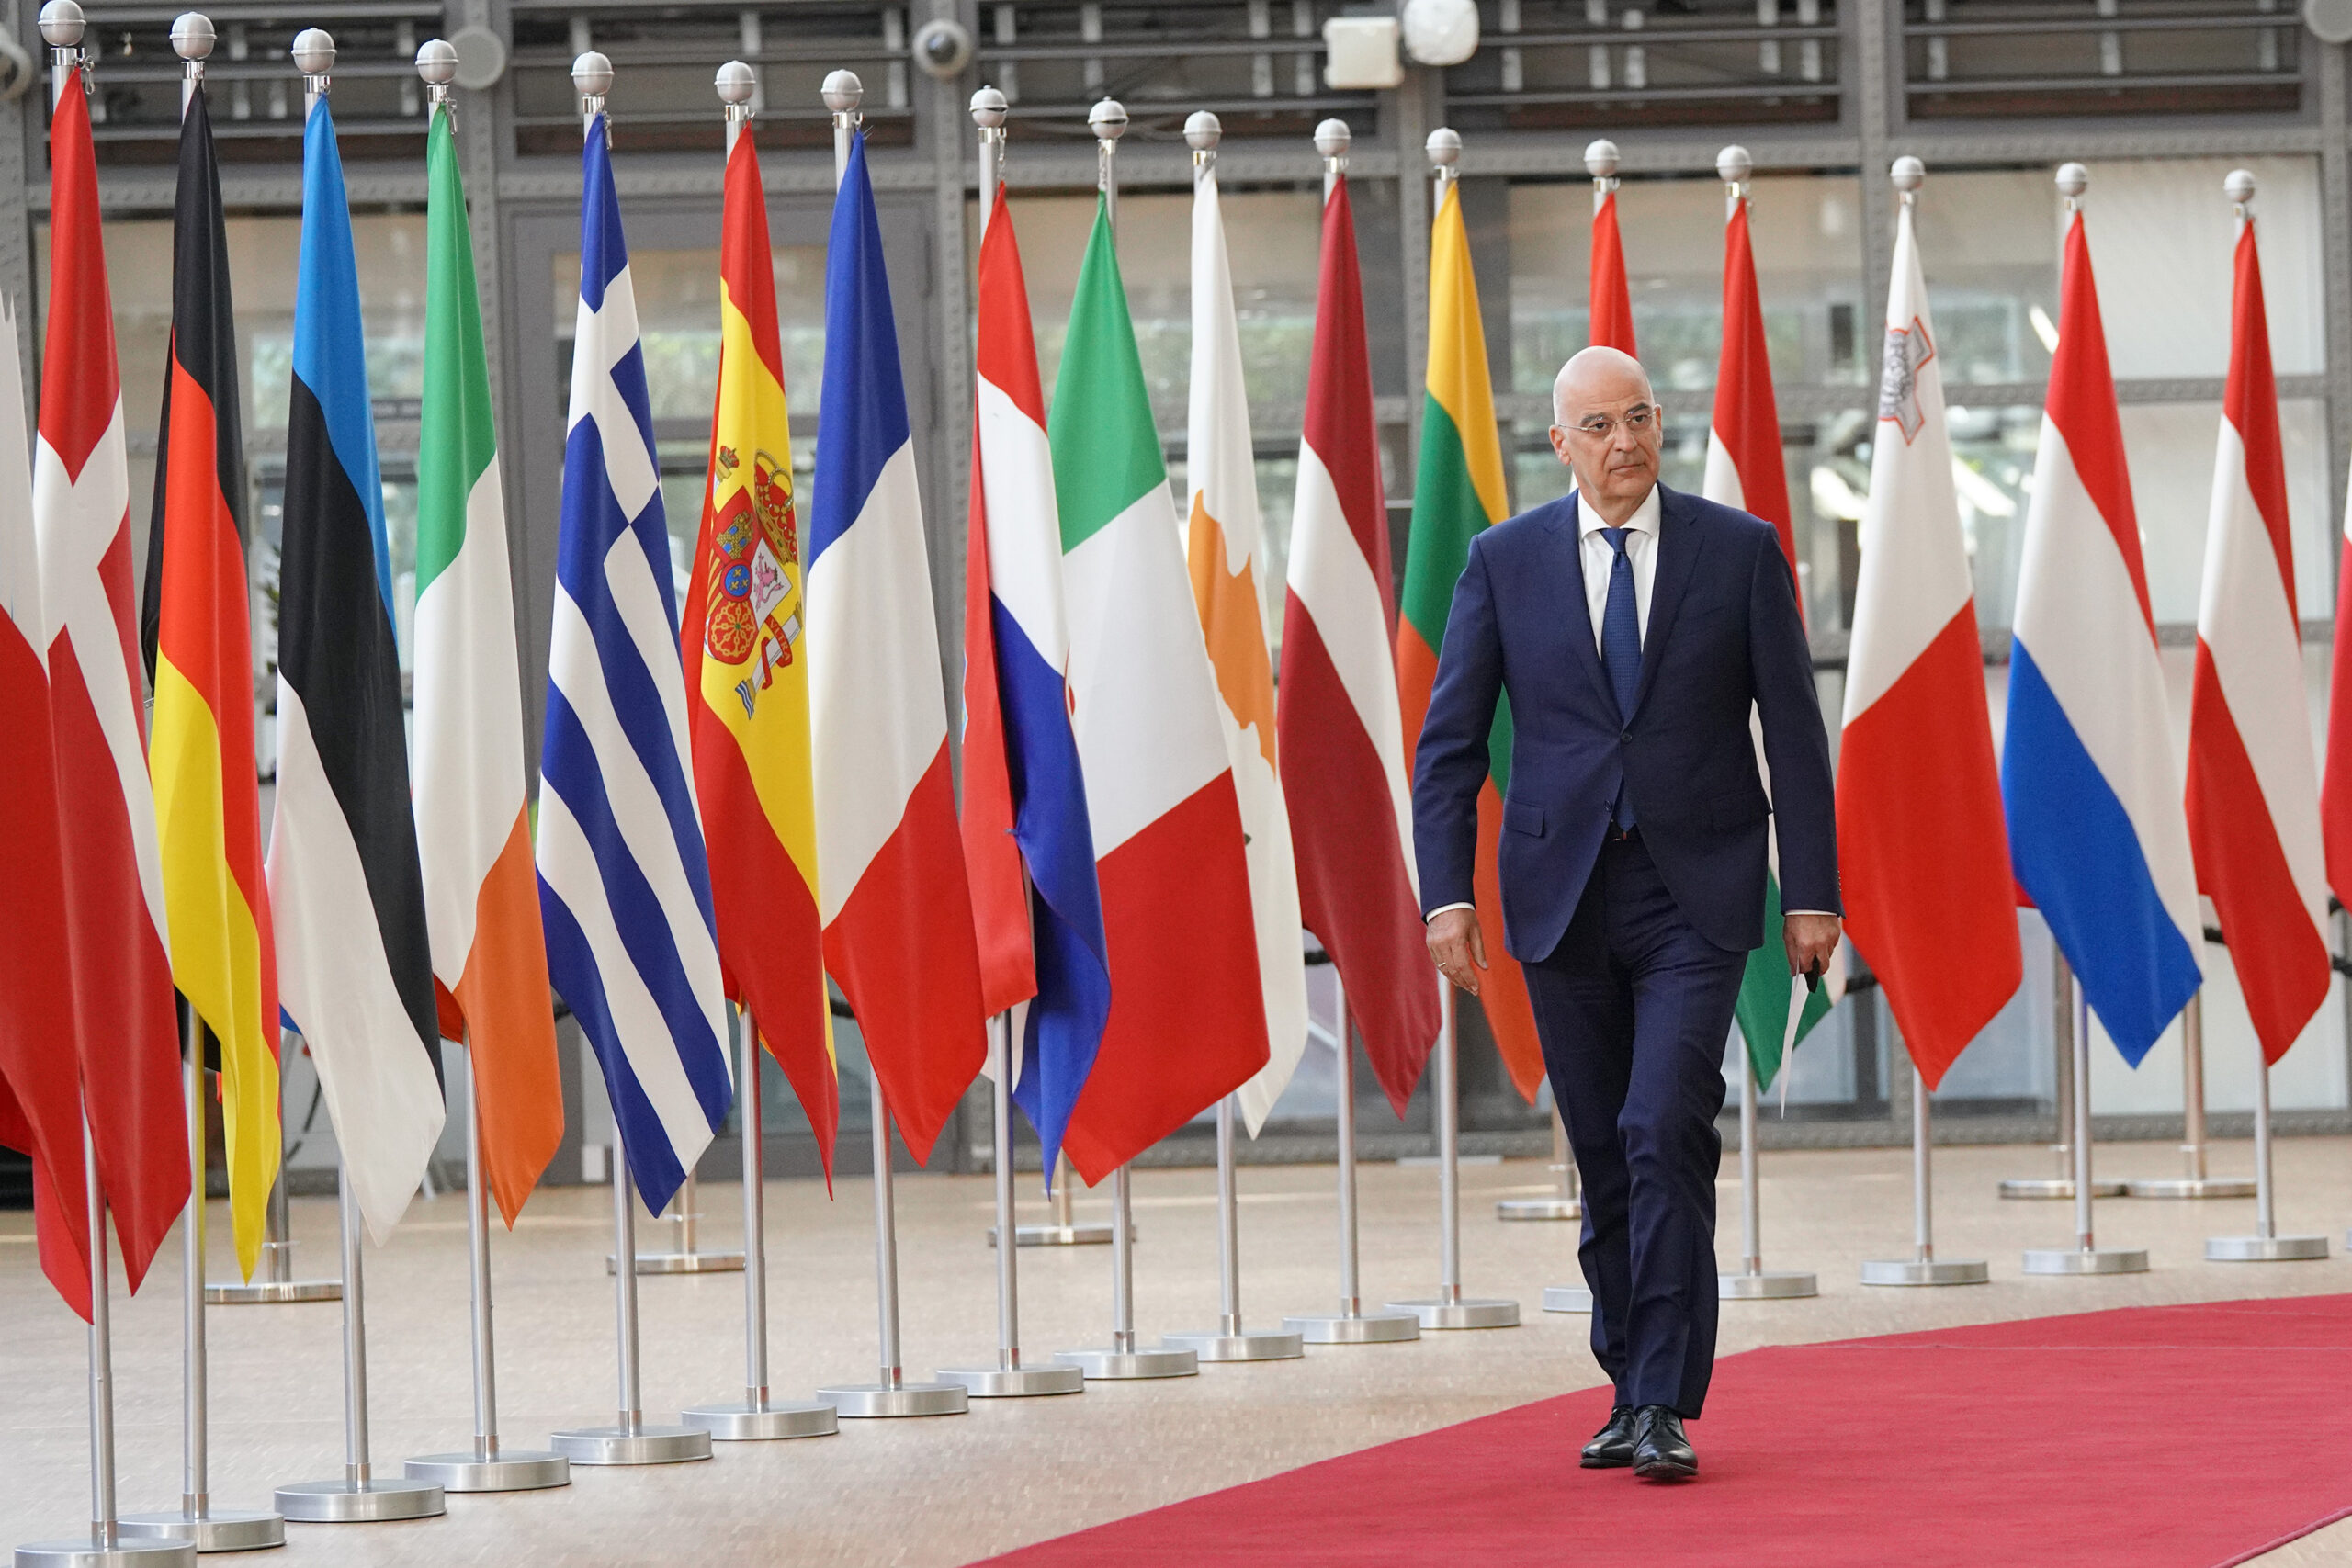 Δηλώσεις μετά τη συμμετοχή του Υπουργού Εξωτερικών, Νίκου Δένδια, στο Συμβούλιο Εξωτερικών Υποθέσεων της ΕΕ (Βρυξέλλες, 13.07.2020)